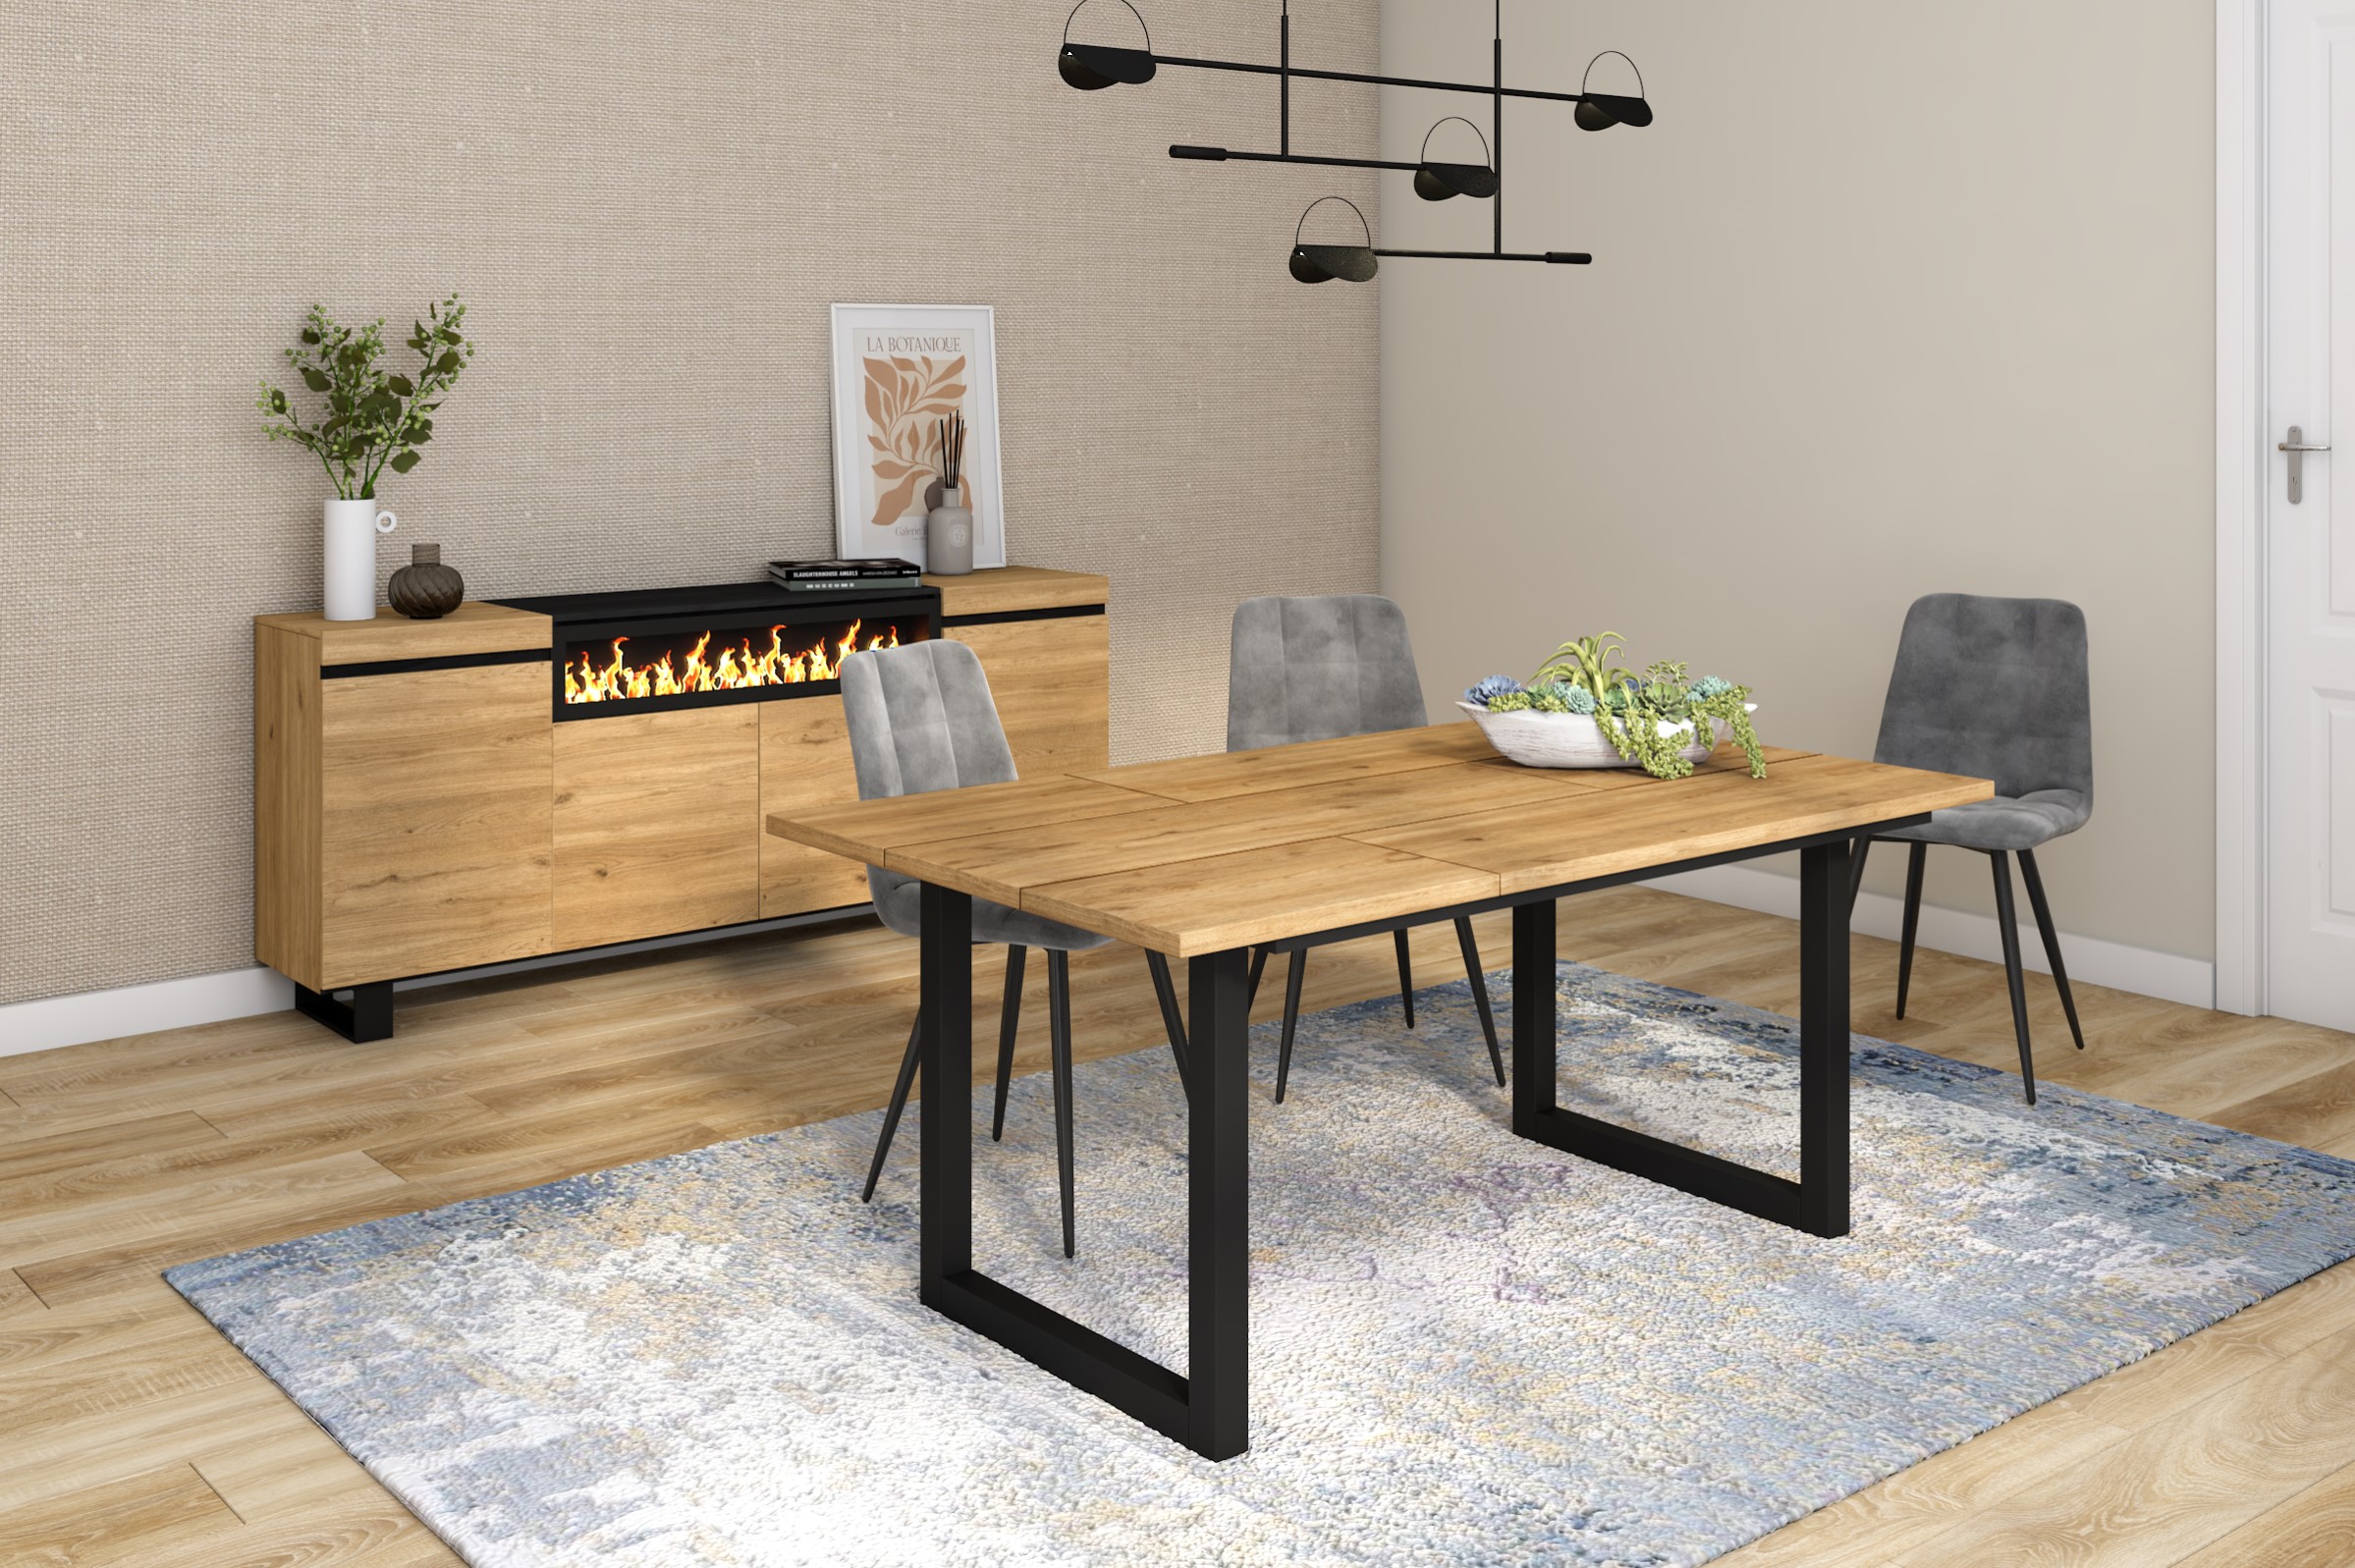 Mueble auxiliar para el salón de estilo industrial en madera natural